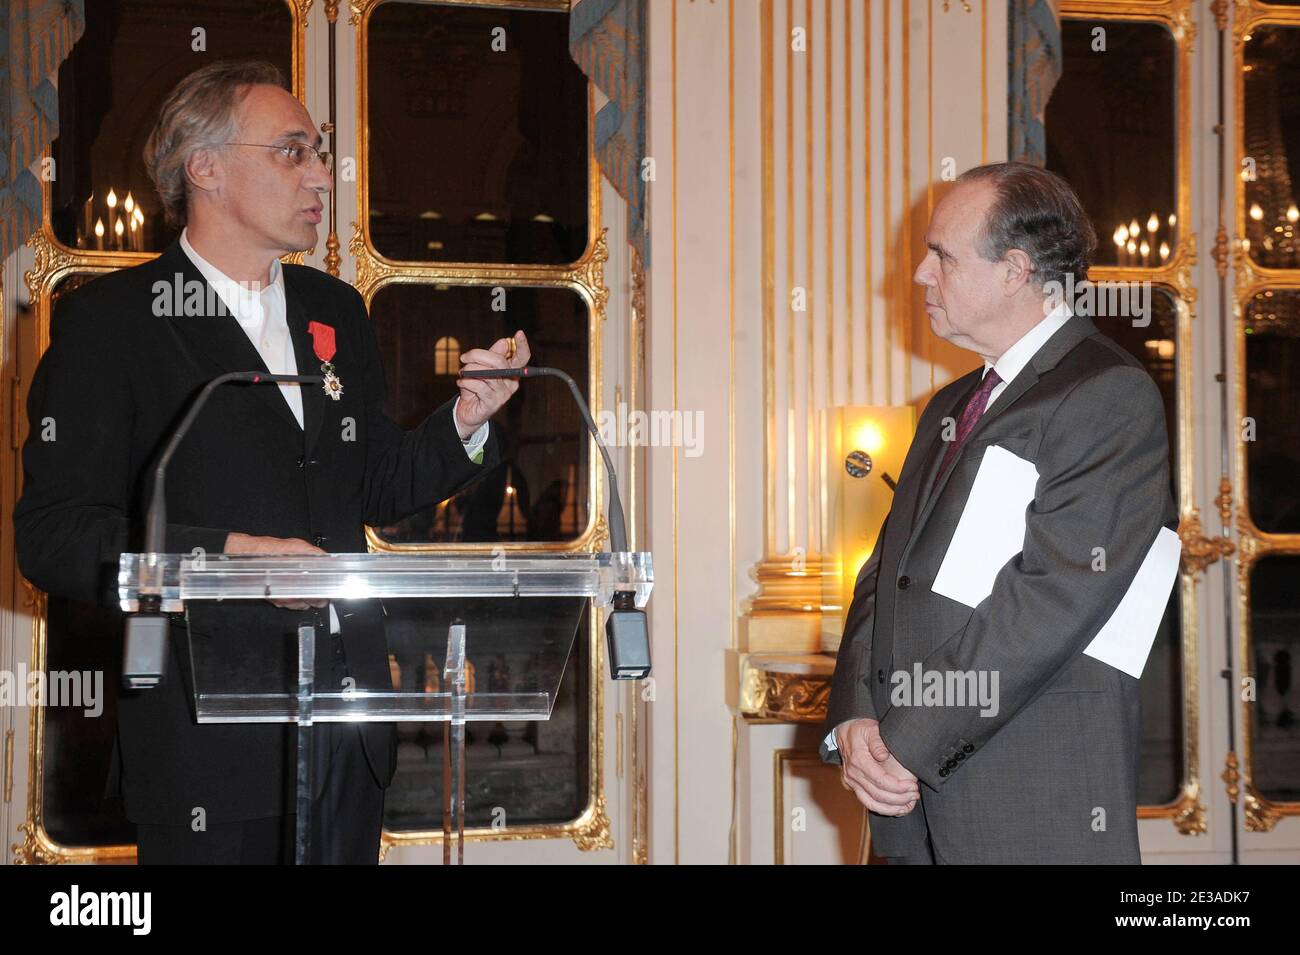 Marc Mimram reçoit la médaille Chevalier dans l'ordre de la Légion d'Honneur lors d'une cérémonie au ministre de la Culture à Paris, France, le 22 novembre 2010. Photo de Giancarlo Gorassini/ABACAPRESS.COM Banque D'Images